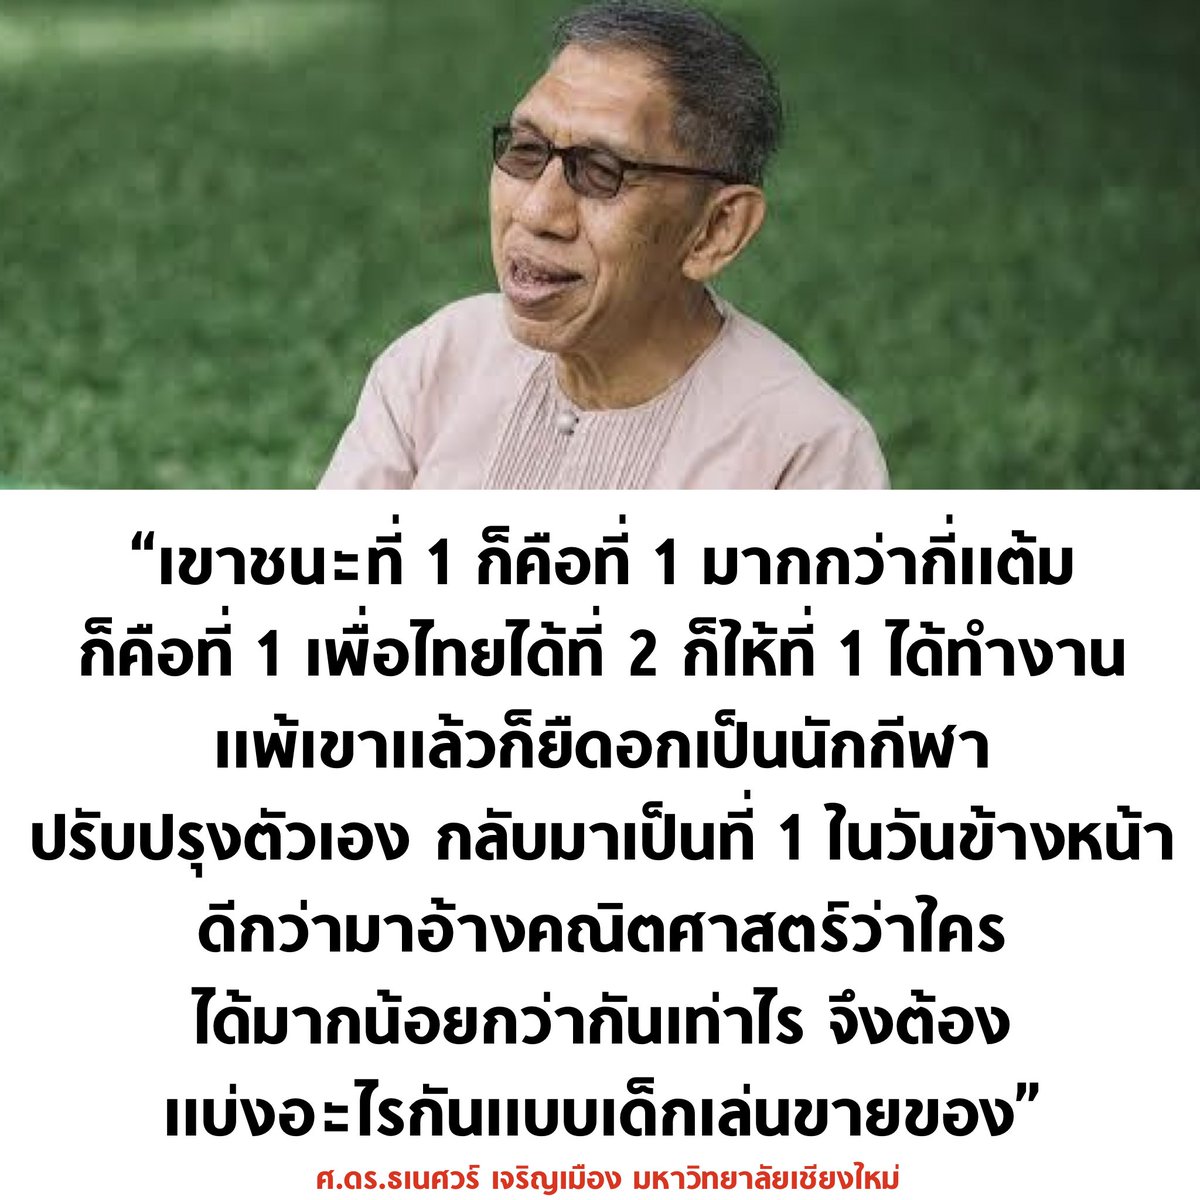 ความเห็นจากคนเลือกเพื่อไทยตั้งแต่ปี 2544 น่าสนใจมากครับ พูดได้ดีเลย

#ประธานสภา #พรรคก้าวไกล #พรรคเพื่อไทย #พิธา #ก้าวไกล